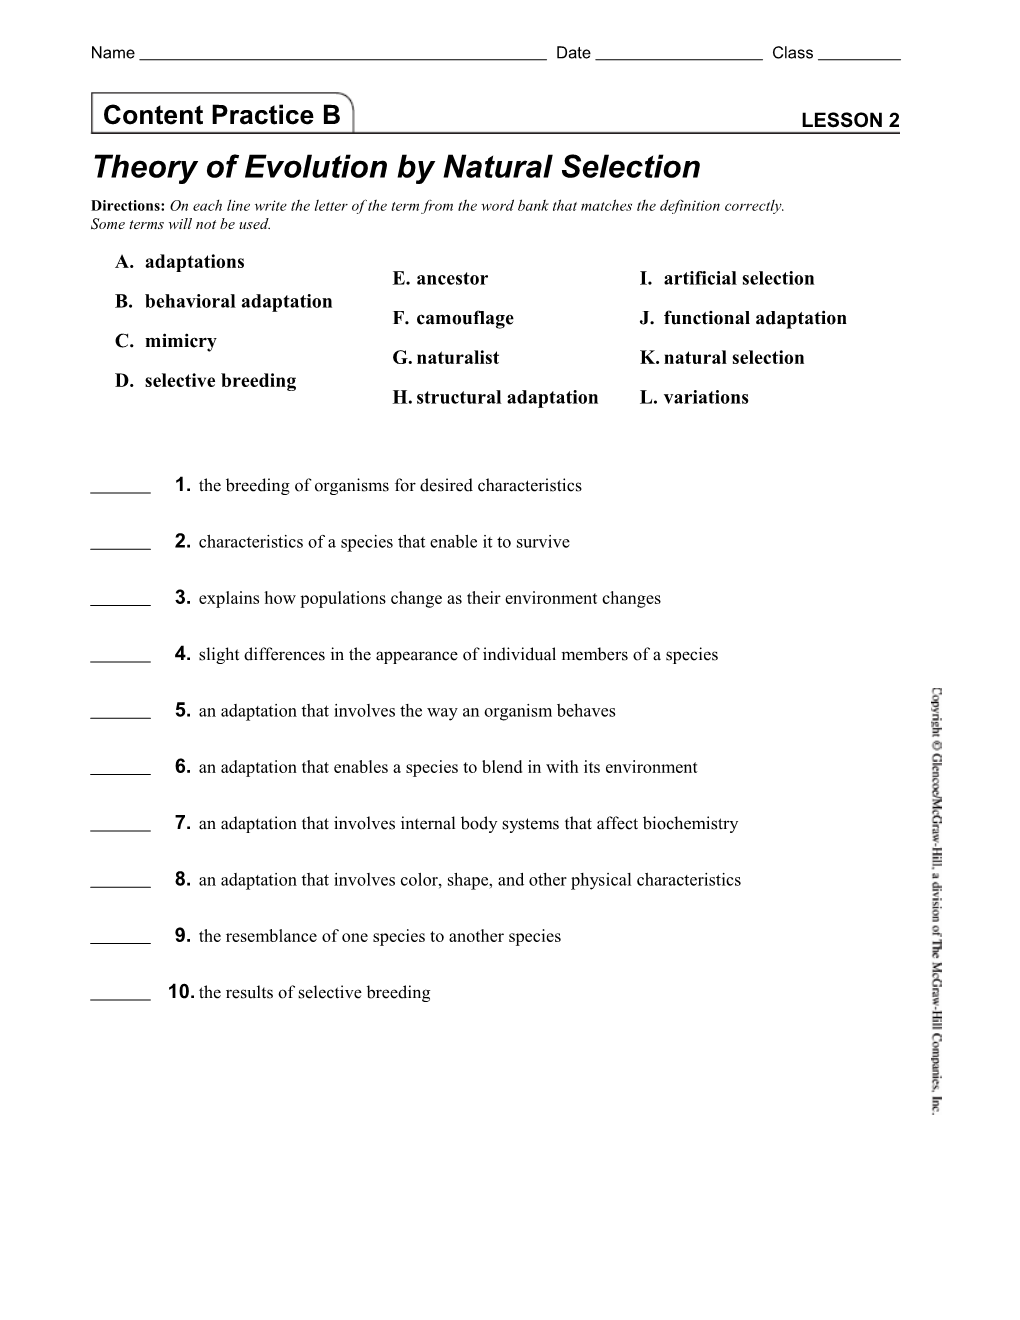 Lesson 3 Biological Evidence of Evolution